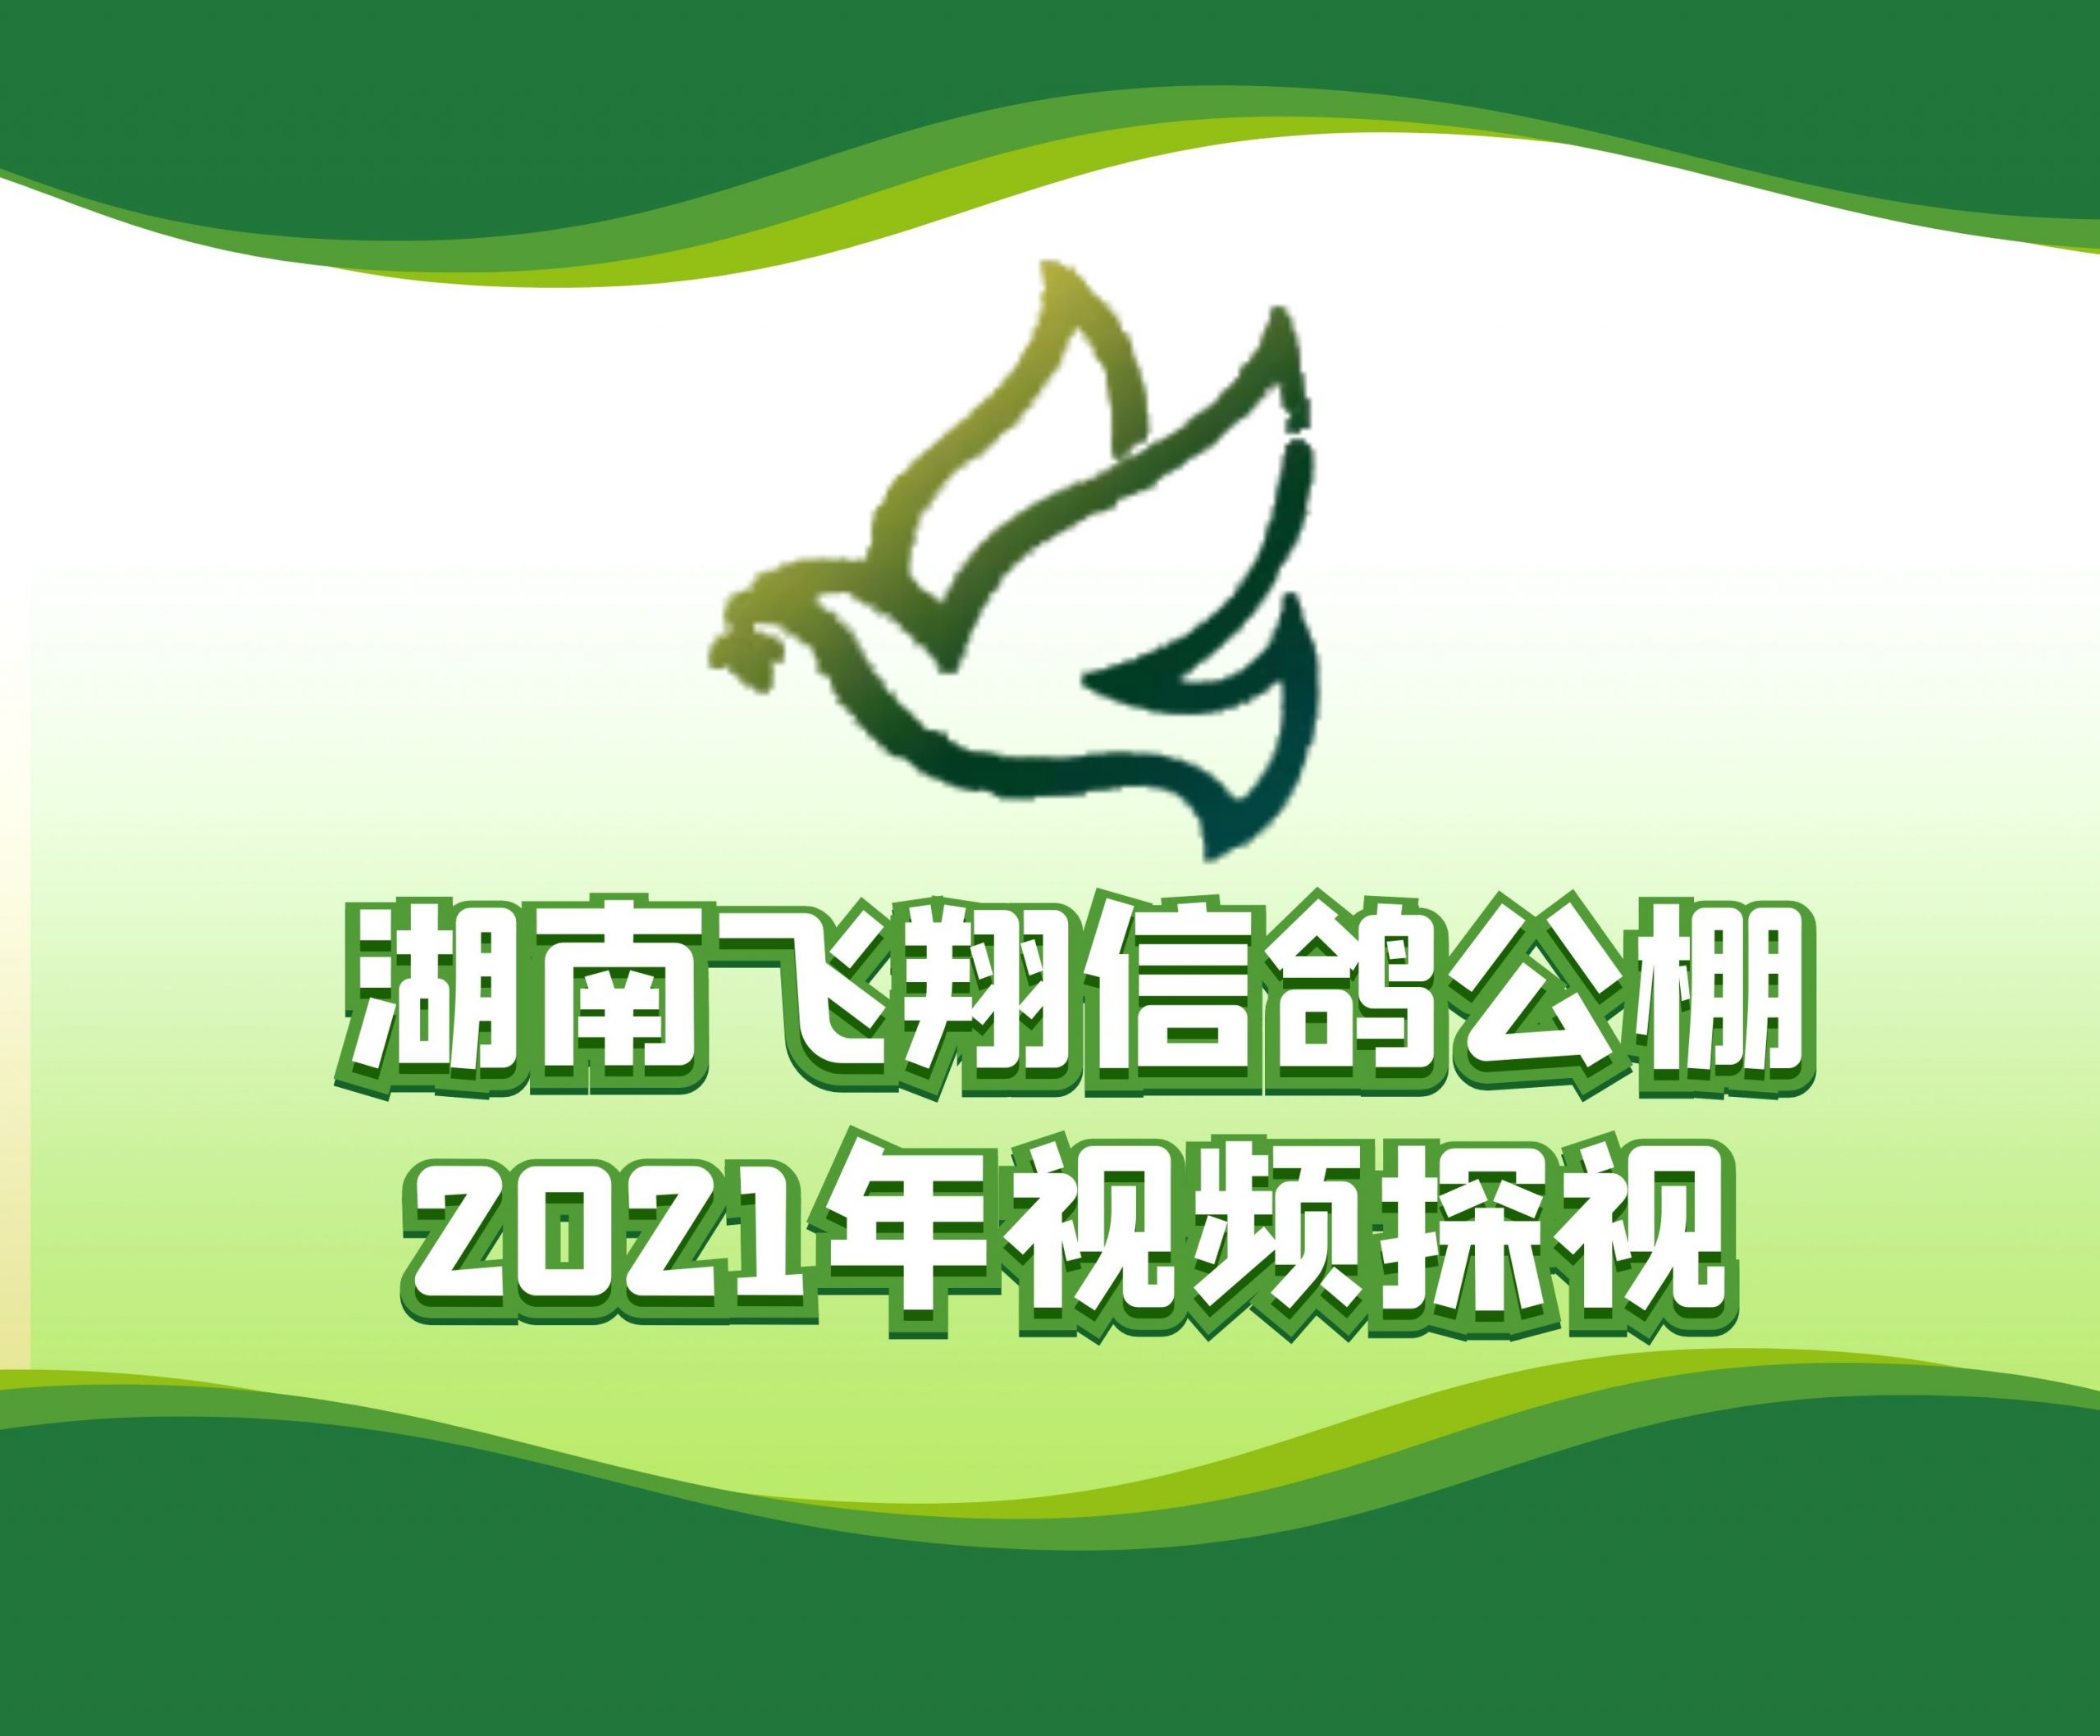 盛辉特-吴石鸽-2021-14-0119354